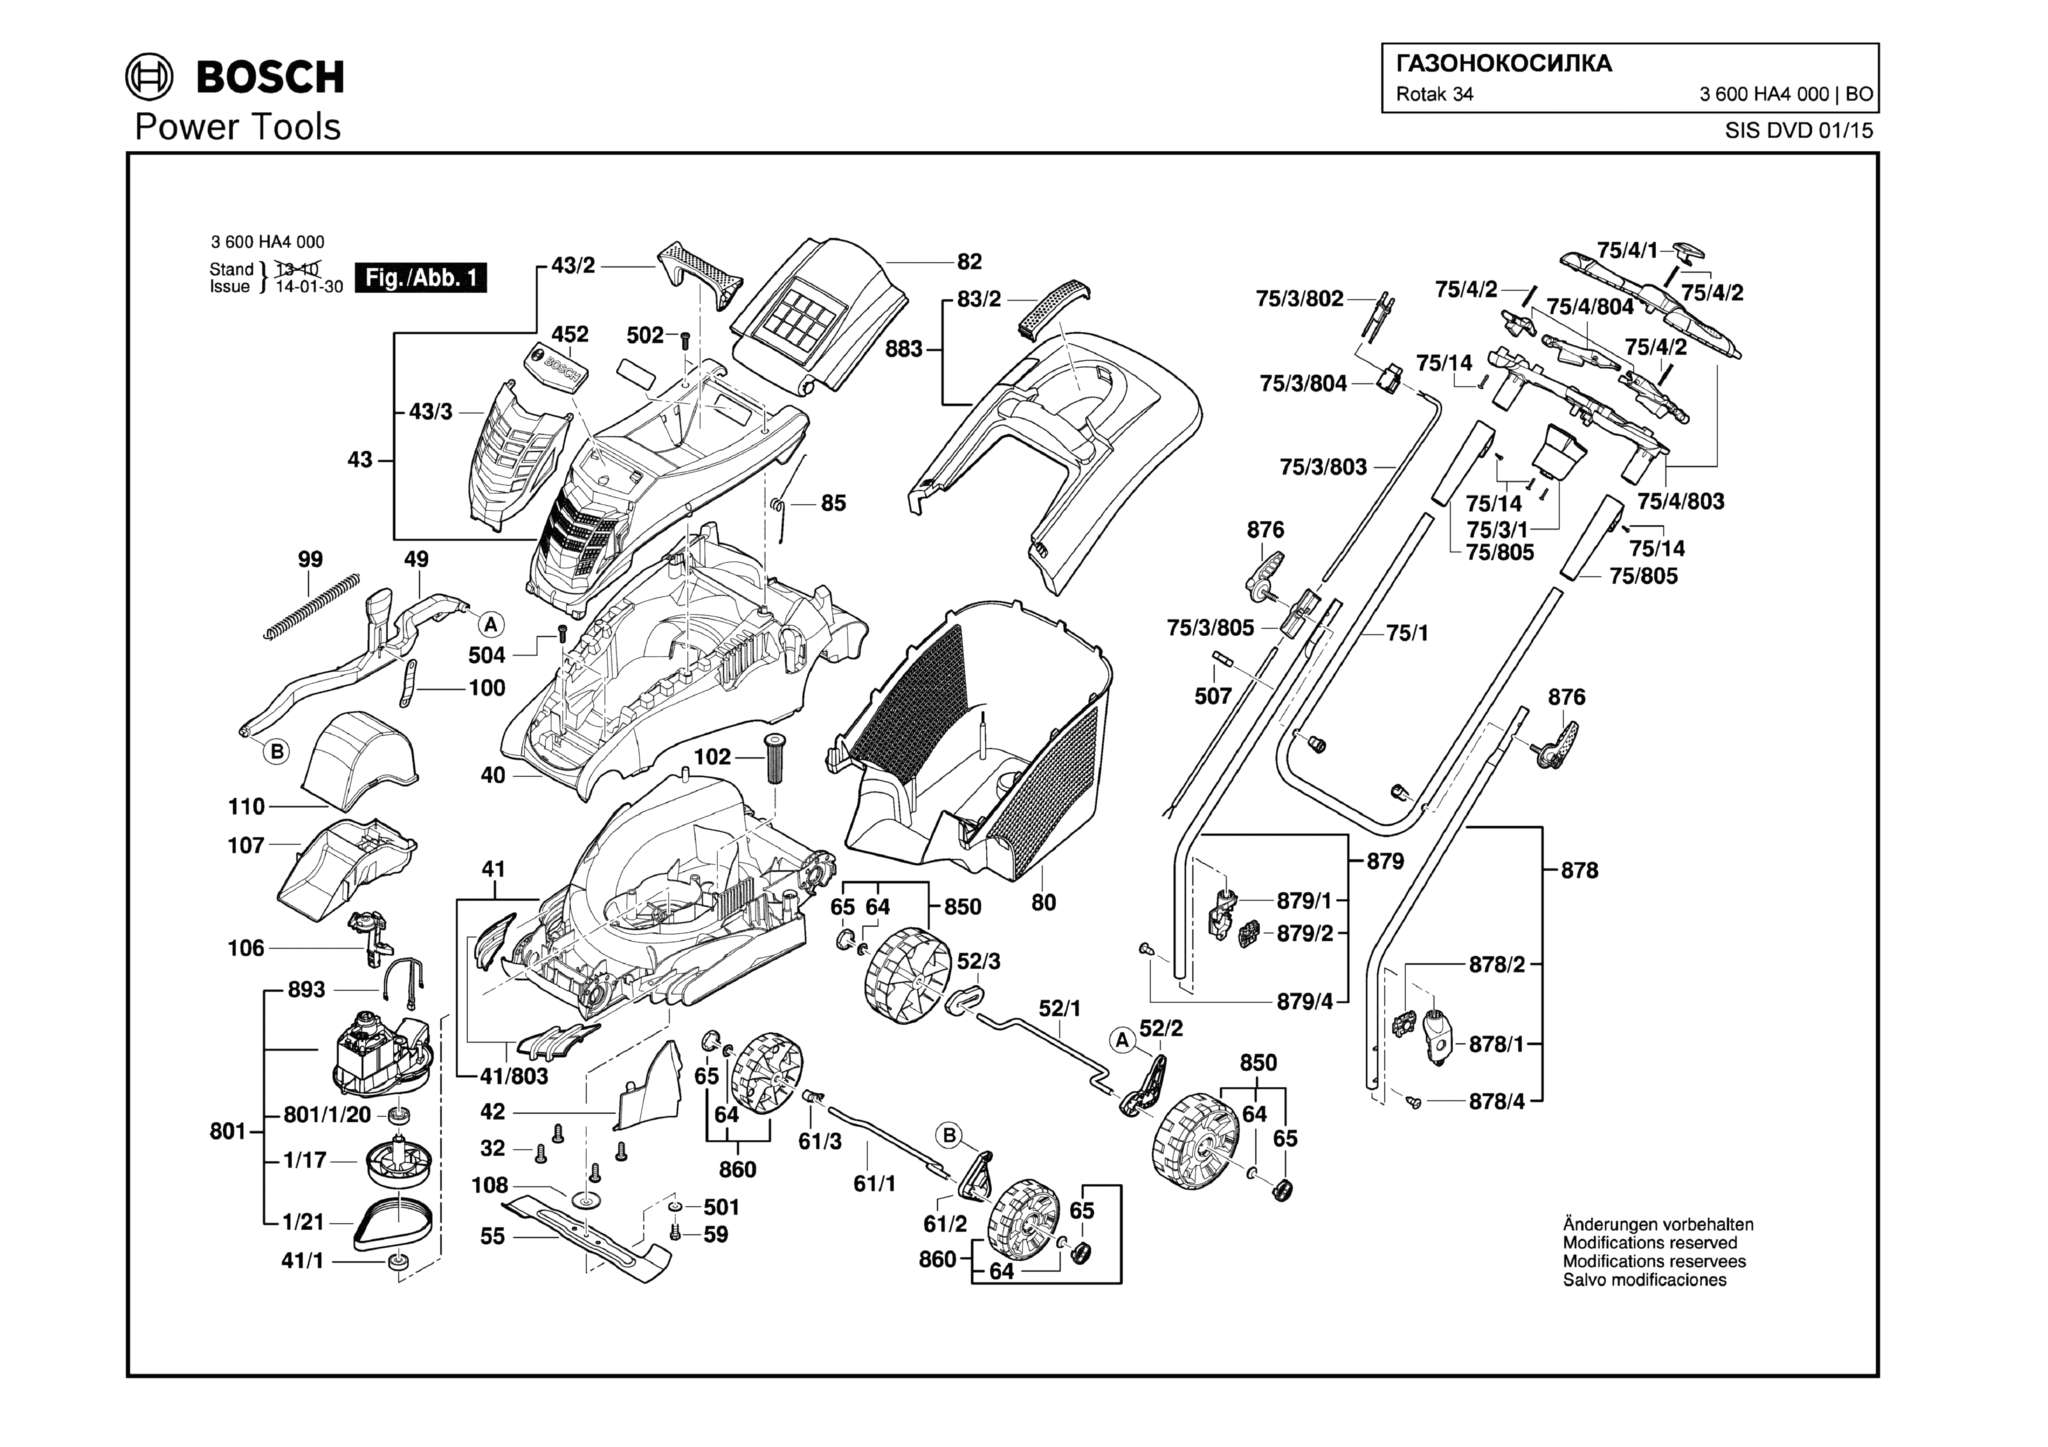 Запчасти, схема и деталировка Bosch ROTAK 34 (ТИП 3600HA4000)